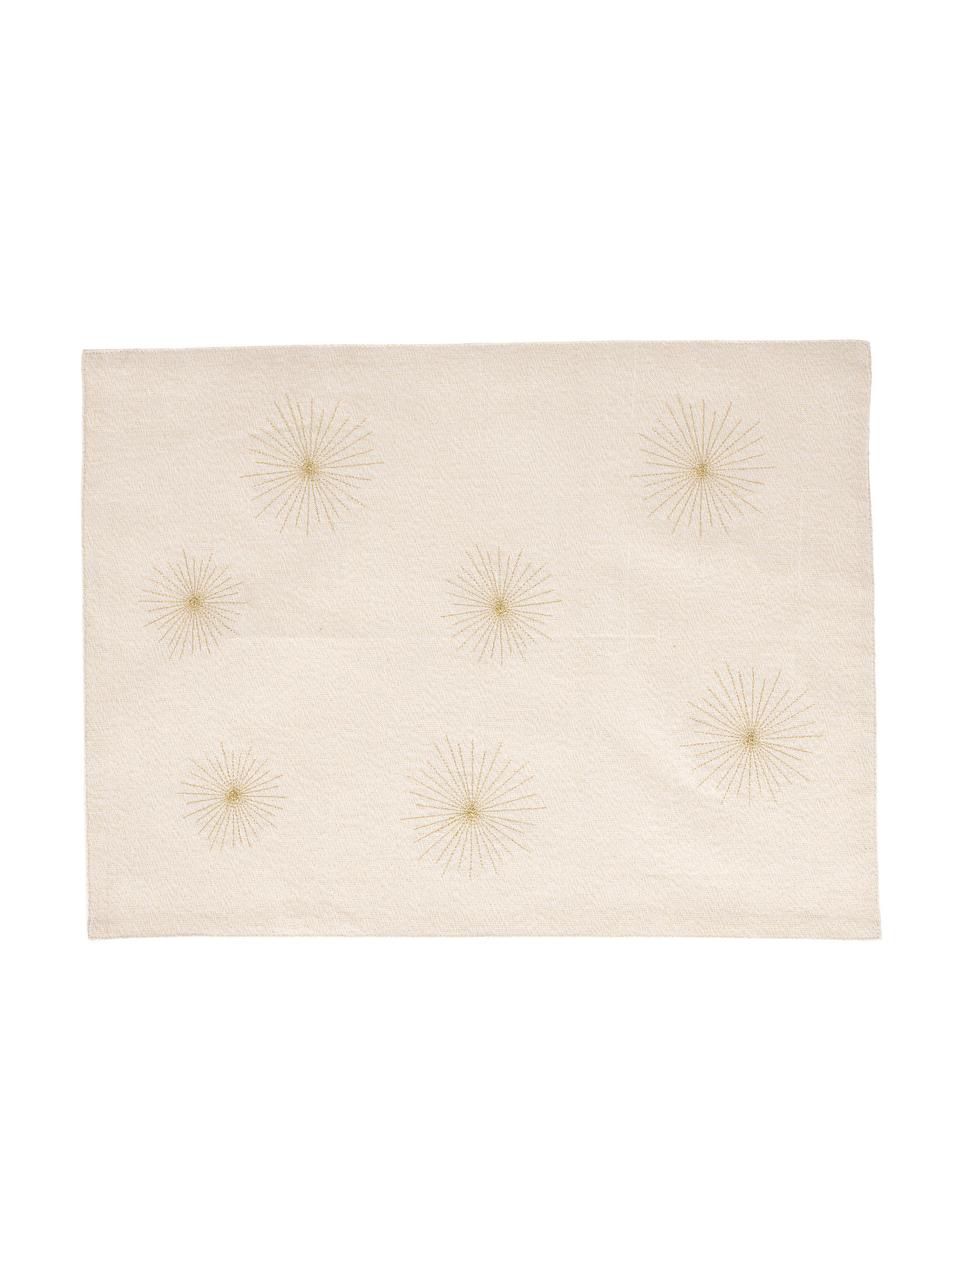 Podkładka z bawełny Aurum, 2 szt., Bawełna, Odcienie kremowego, odcienie złotego, S 50 x D 38 cm